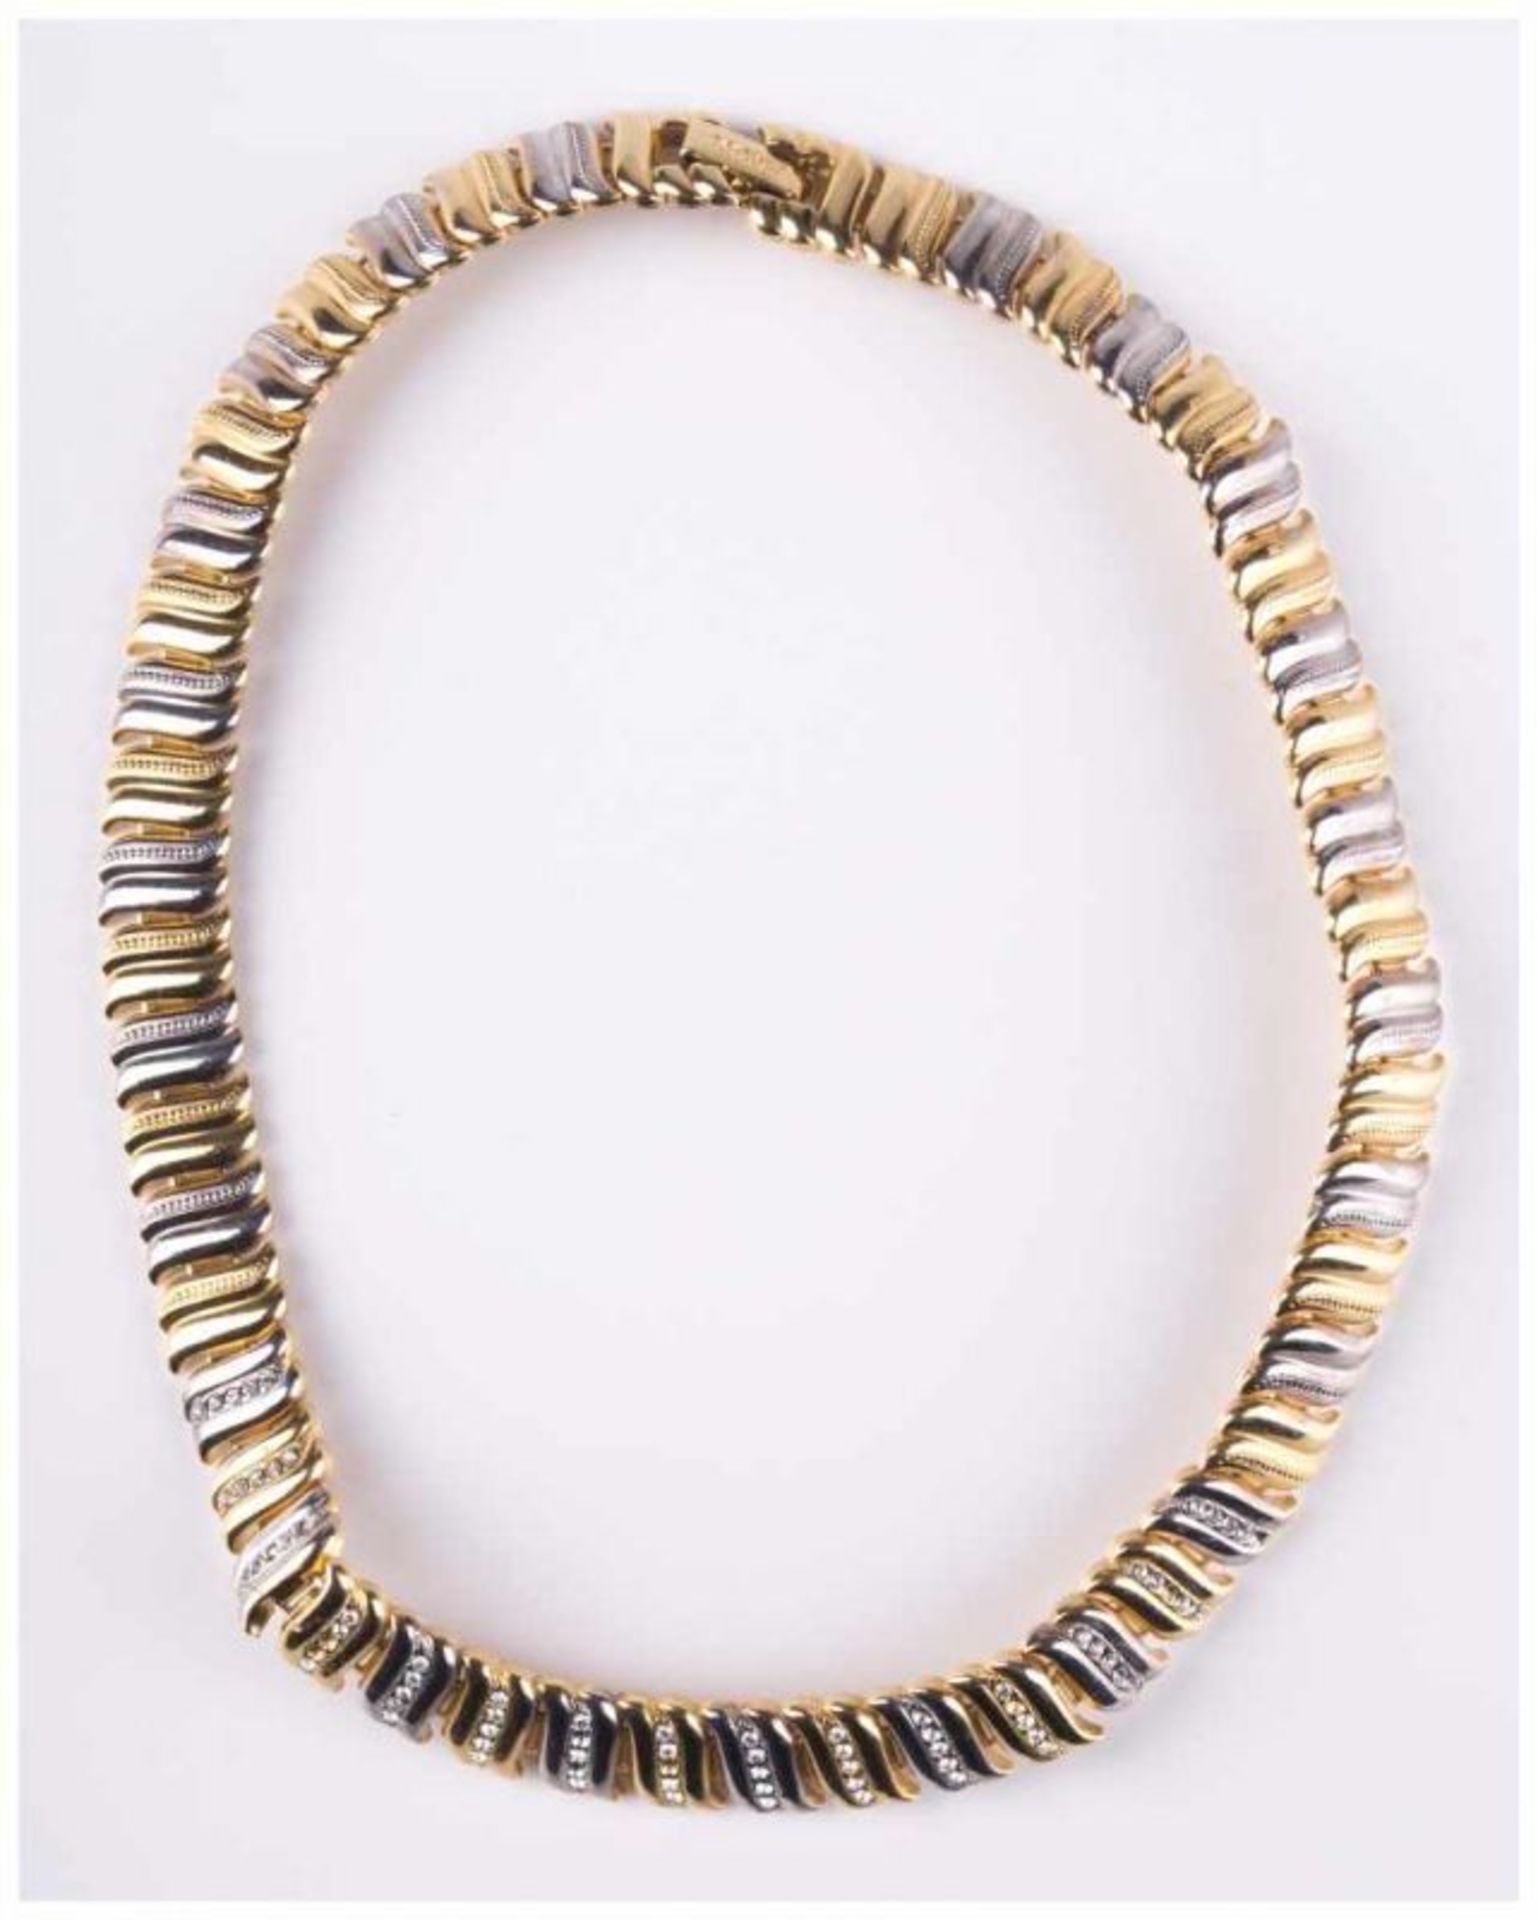 Modeschmuck Collier / Costume jewellery necklace - Vergoldung in Bicolor, mit [...] - Bild 2 aus 8